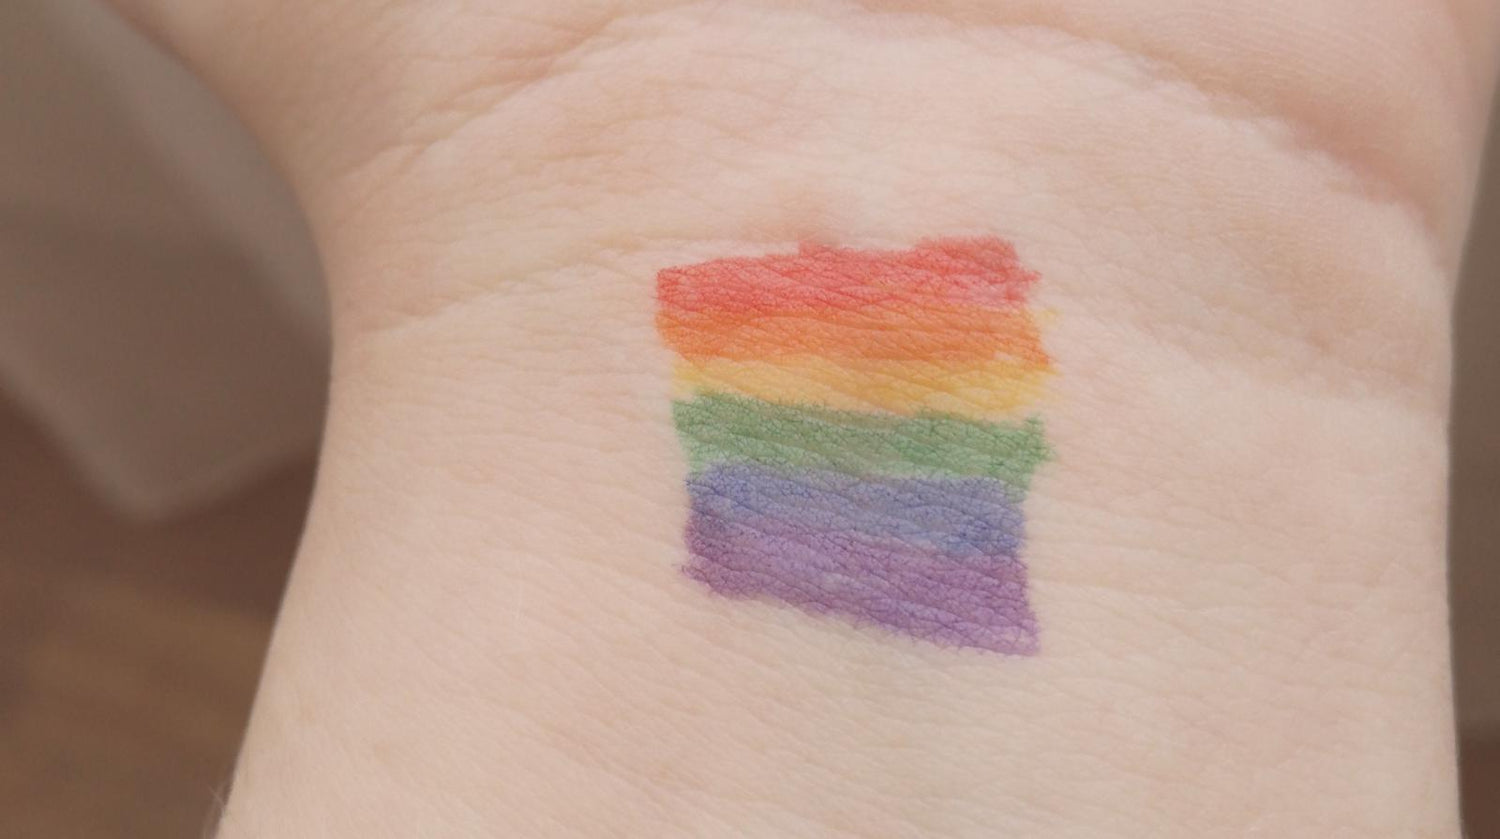 Rainbow Pride Flag Drawn on a Wrist